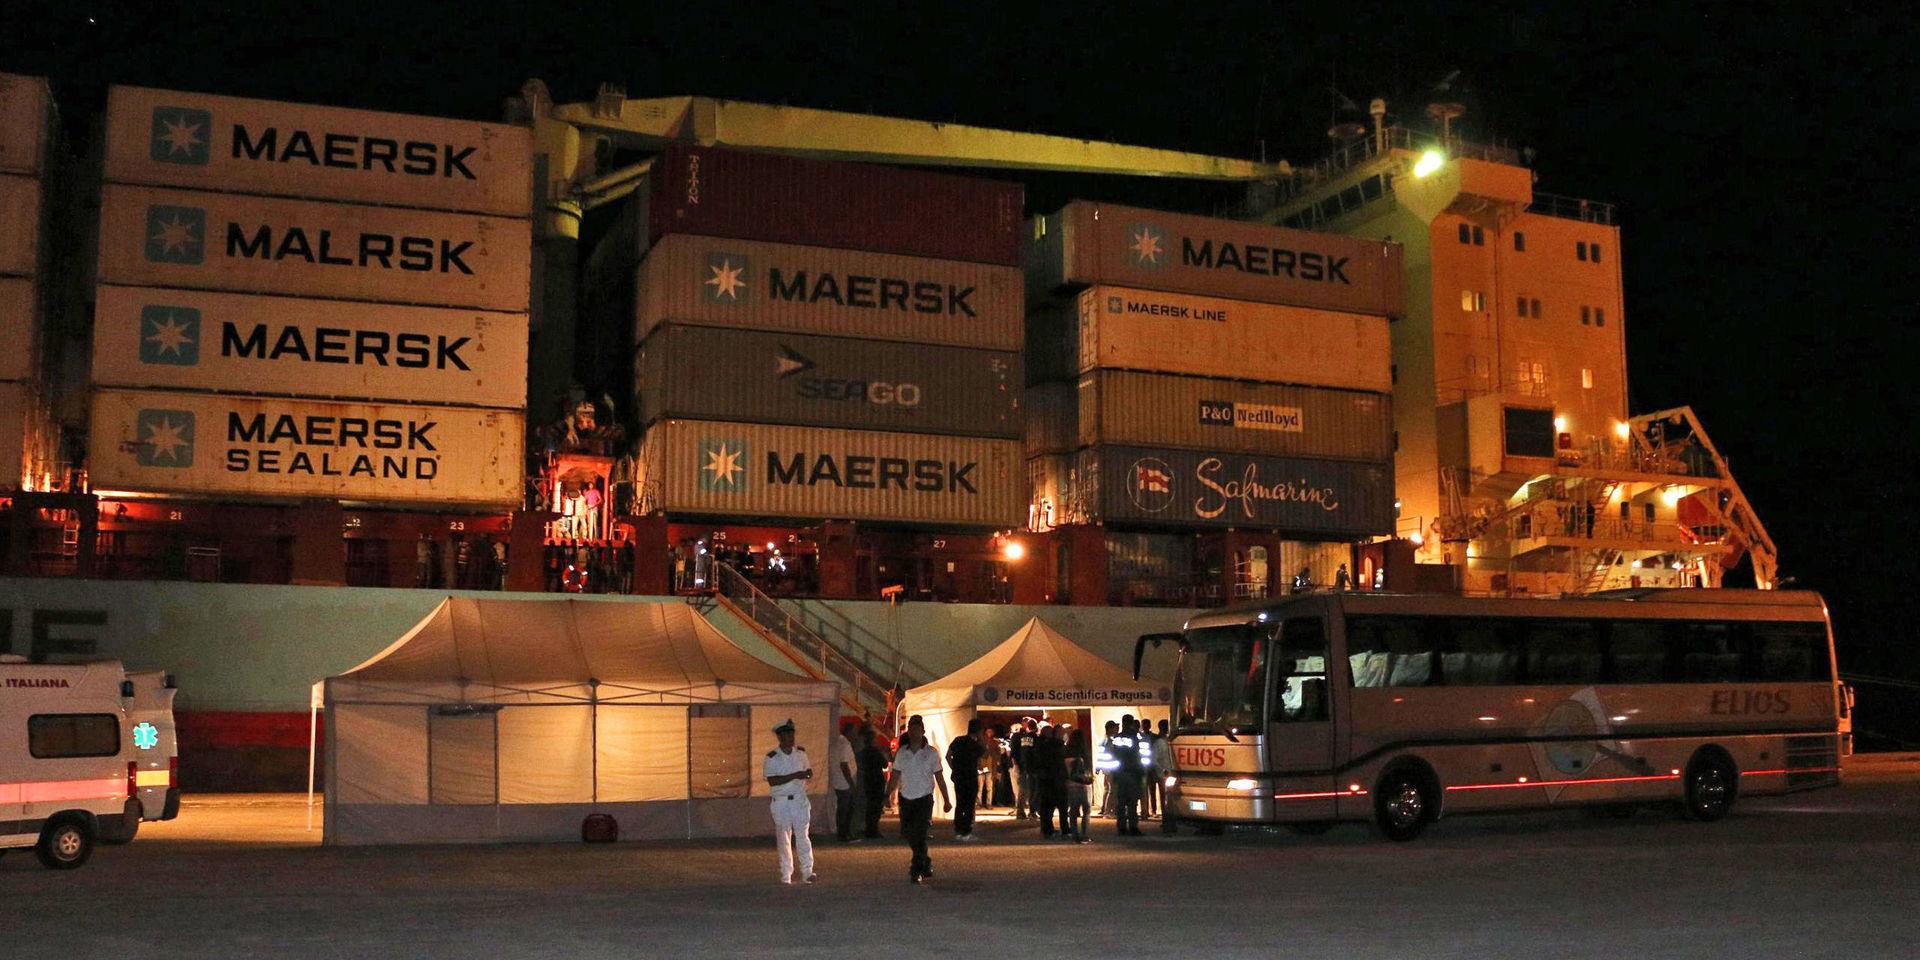 Ett av danska Mærsks containerfartyg har kapats utanför Nigeria, enligt medieuppgifter. På bilden ett annat av rederiets fartyg. Arkivbild.